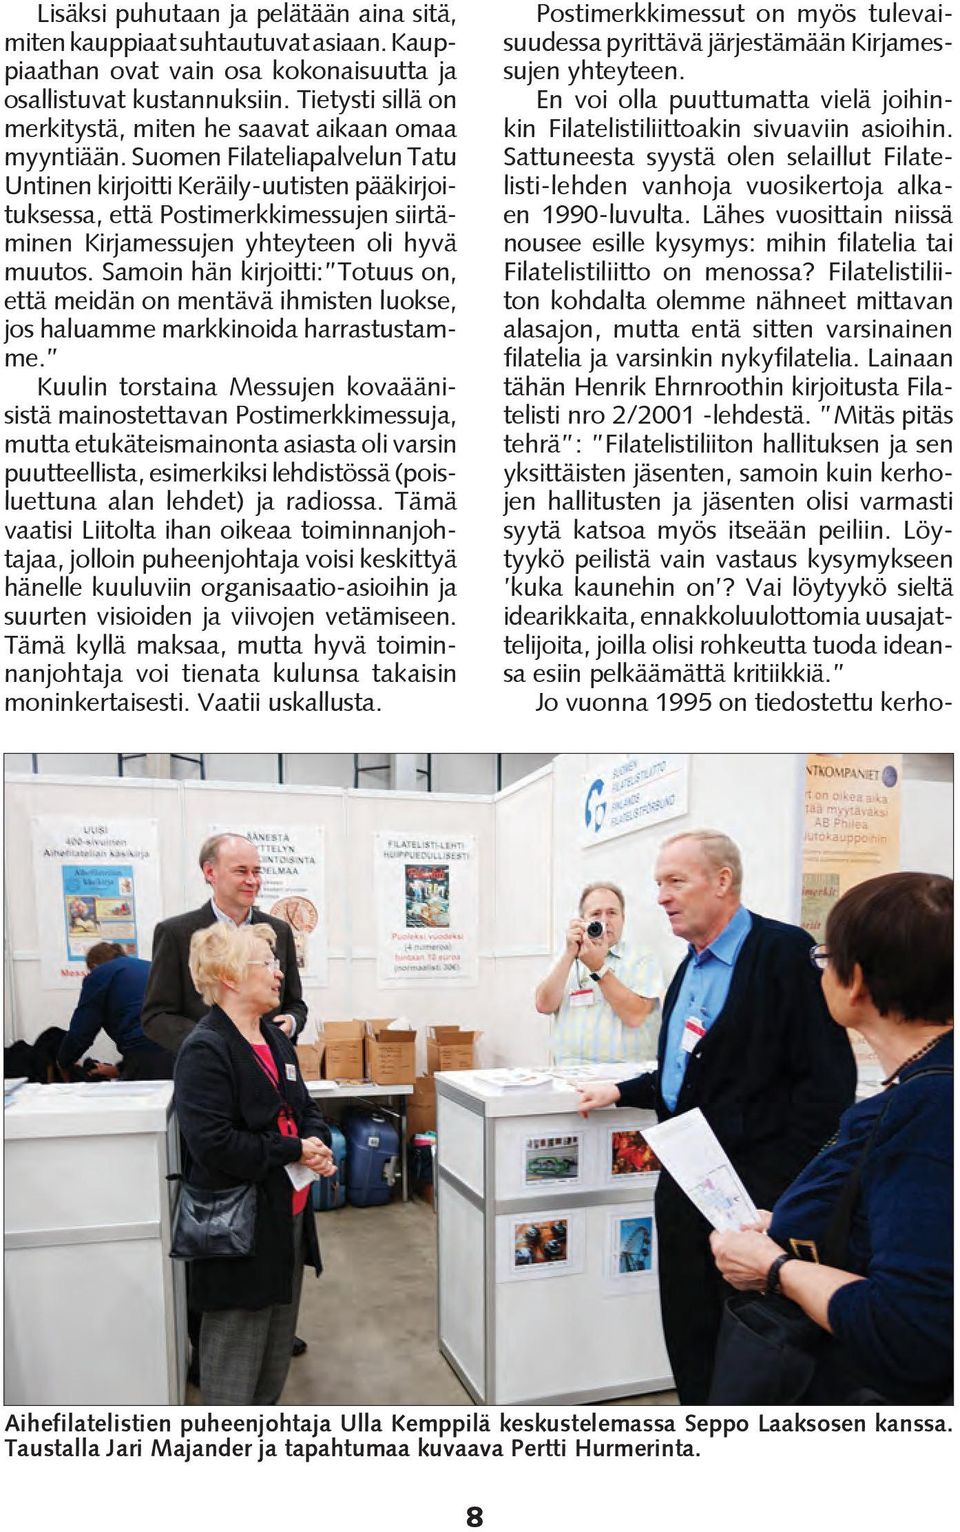 Suomen Filateliapalvelun Tatu Untinen kirjoitti Keräily-uutisten pääkirjoituksessa, että Postimerkkimessujen siirtäminen Kirjamessujen yhteyteen oli hyvä muutos.